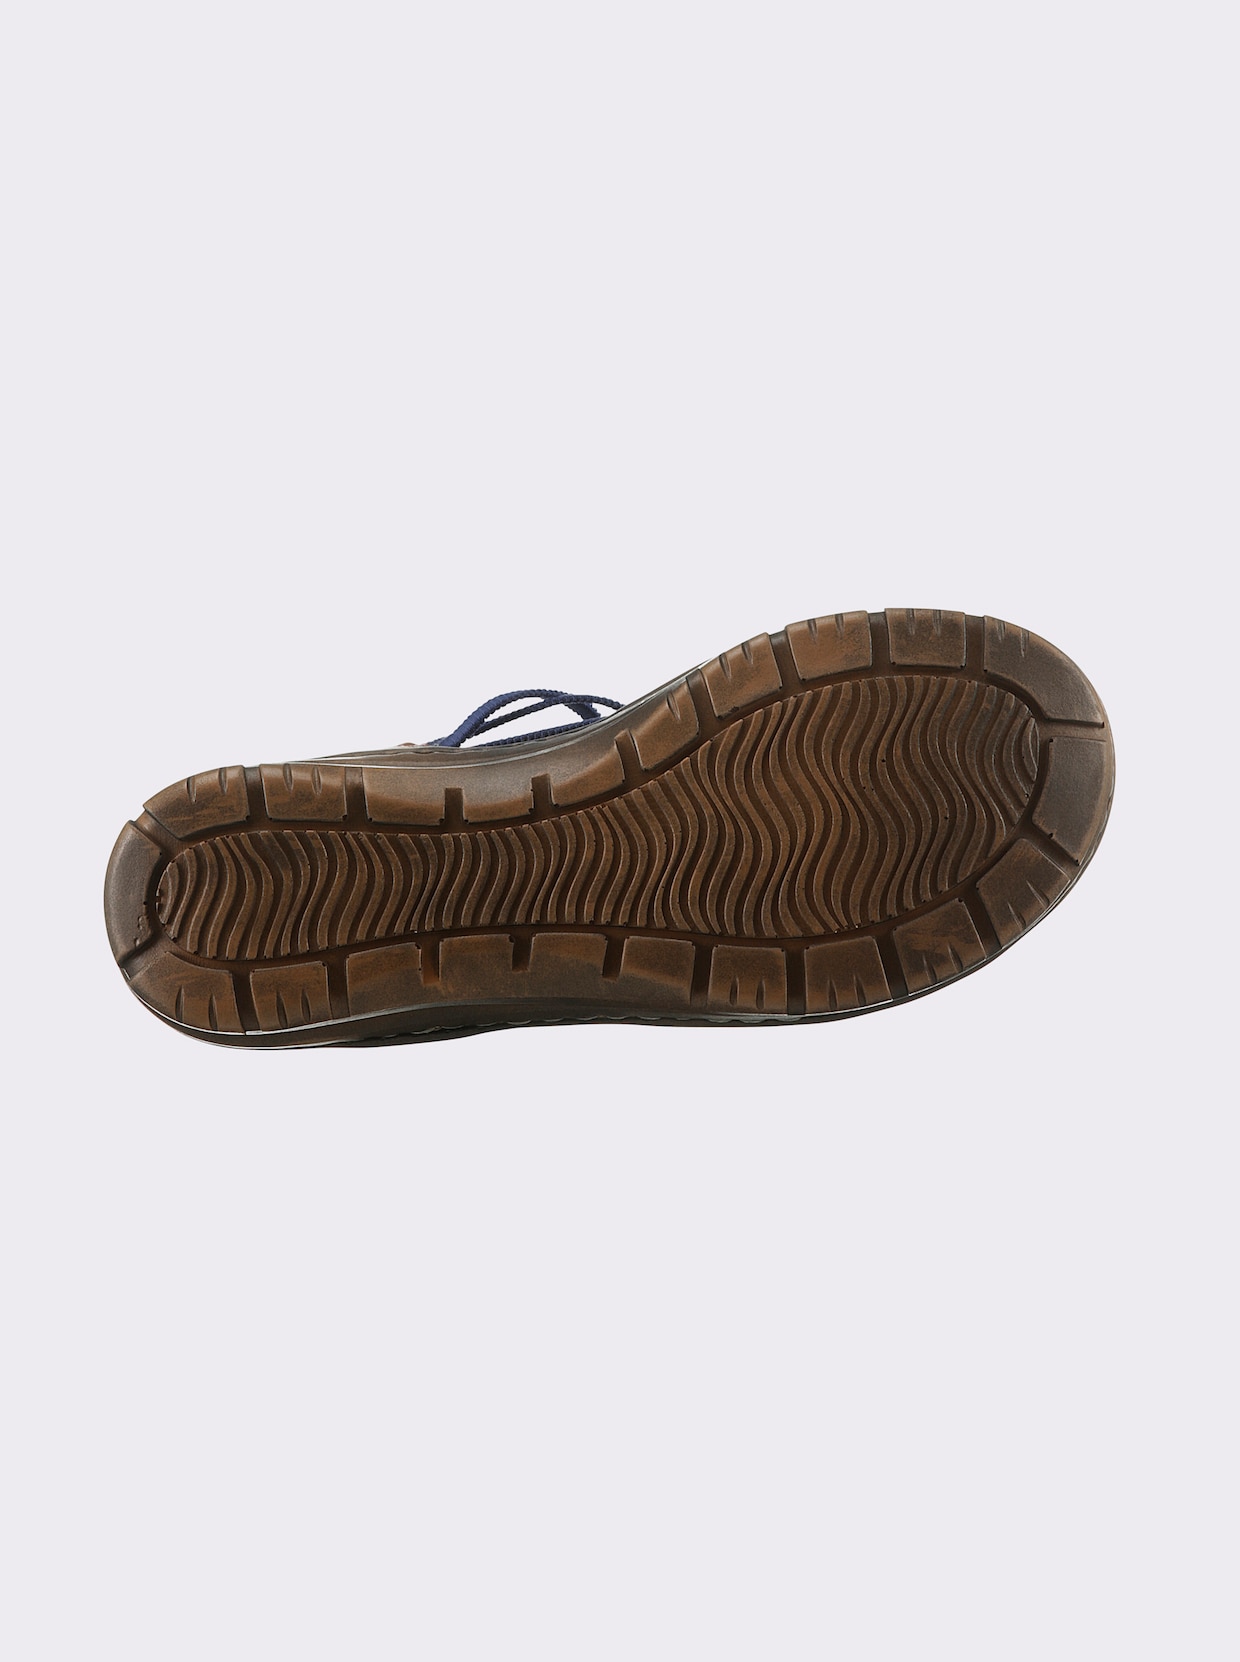 airsoft modern+ sandaaltjes - donkerblauw